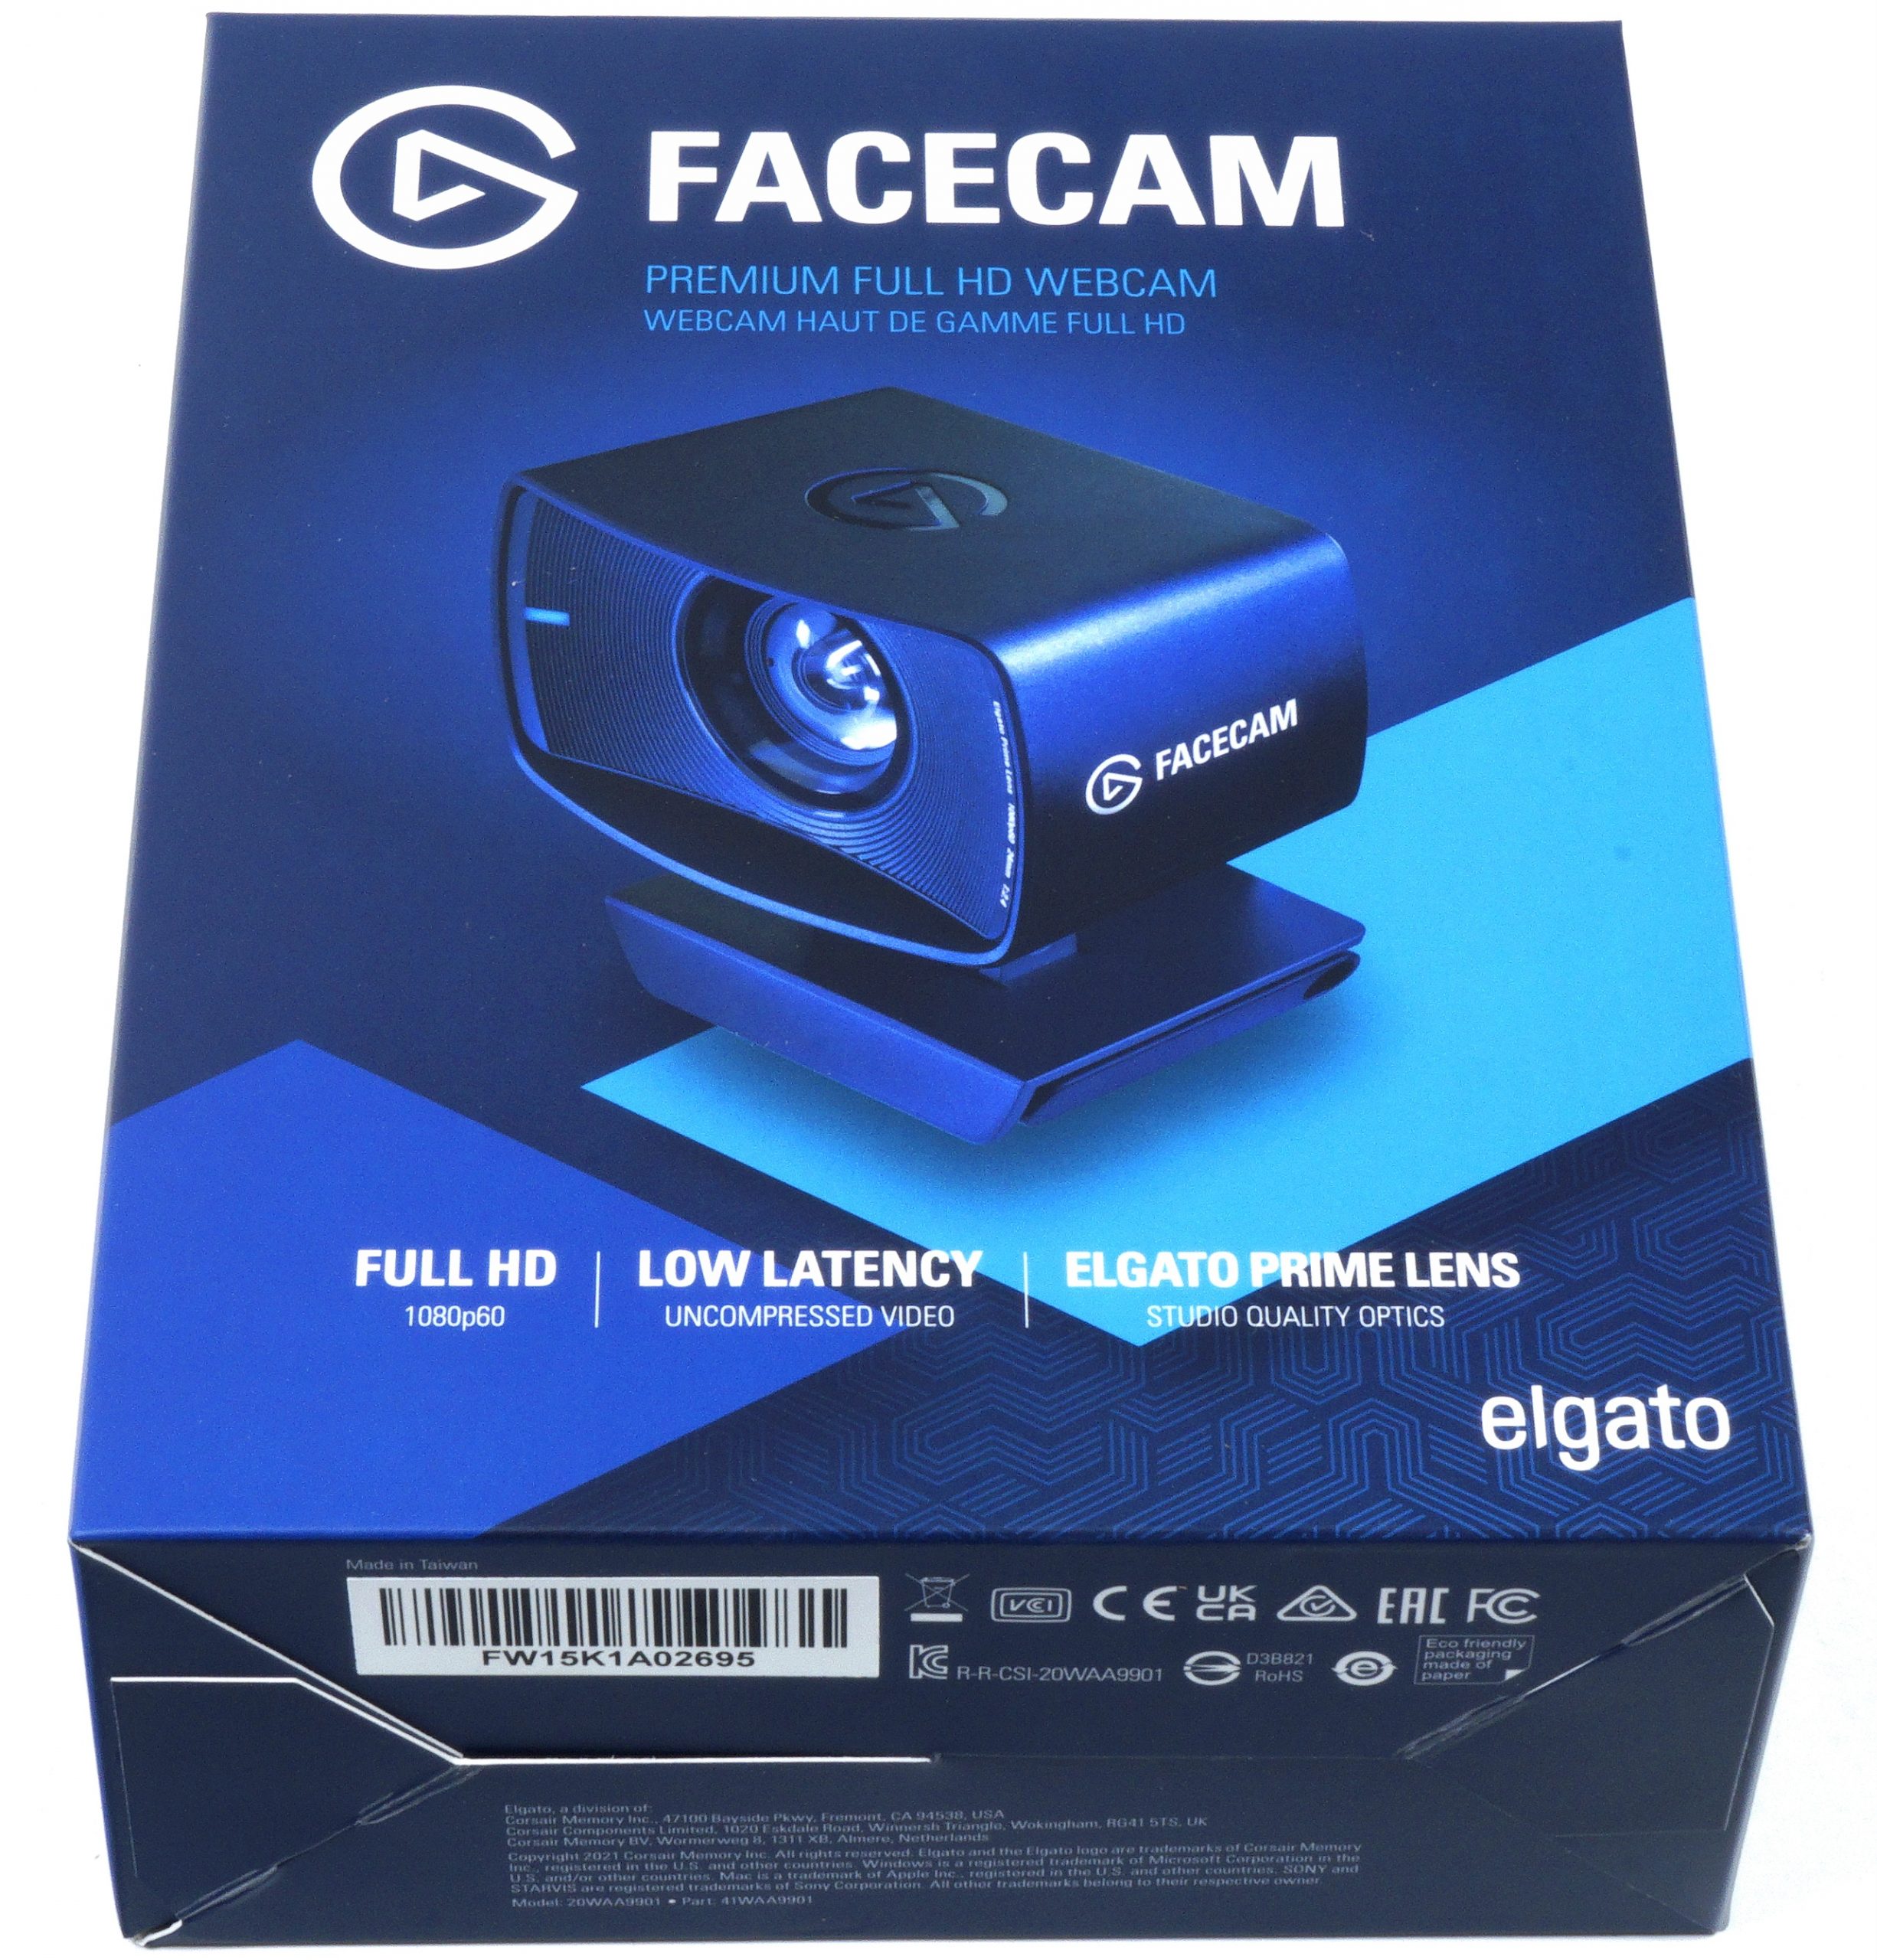 ほぼ未使用 Elgato Facecam エルガト WEBカメラ - スマホ・タブレット